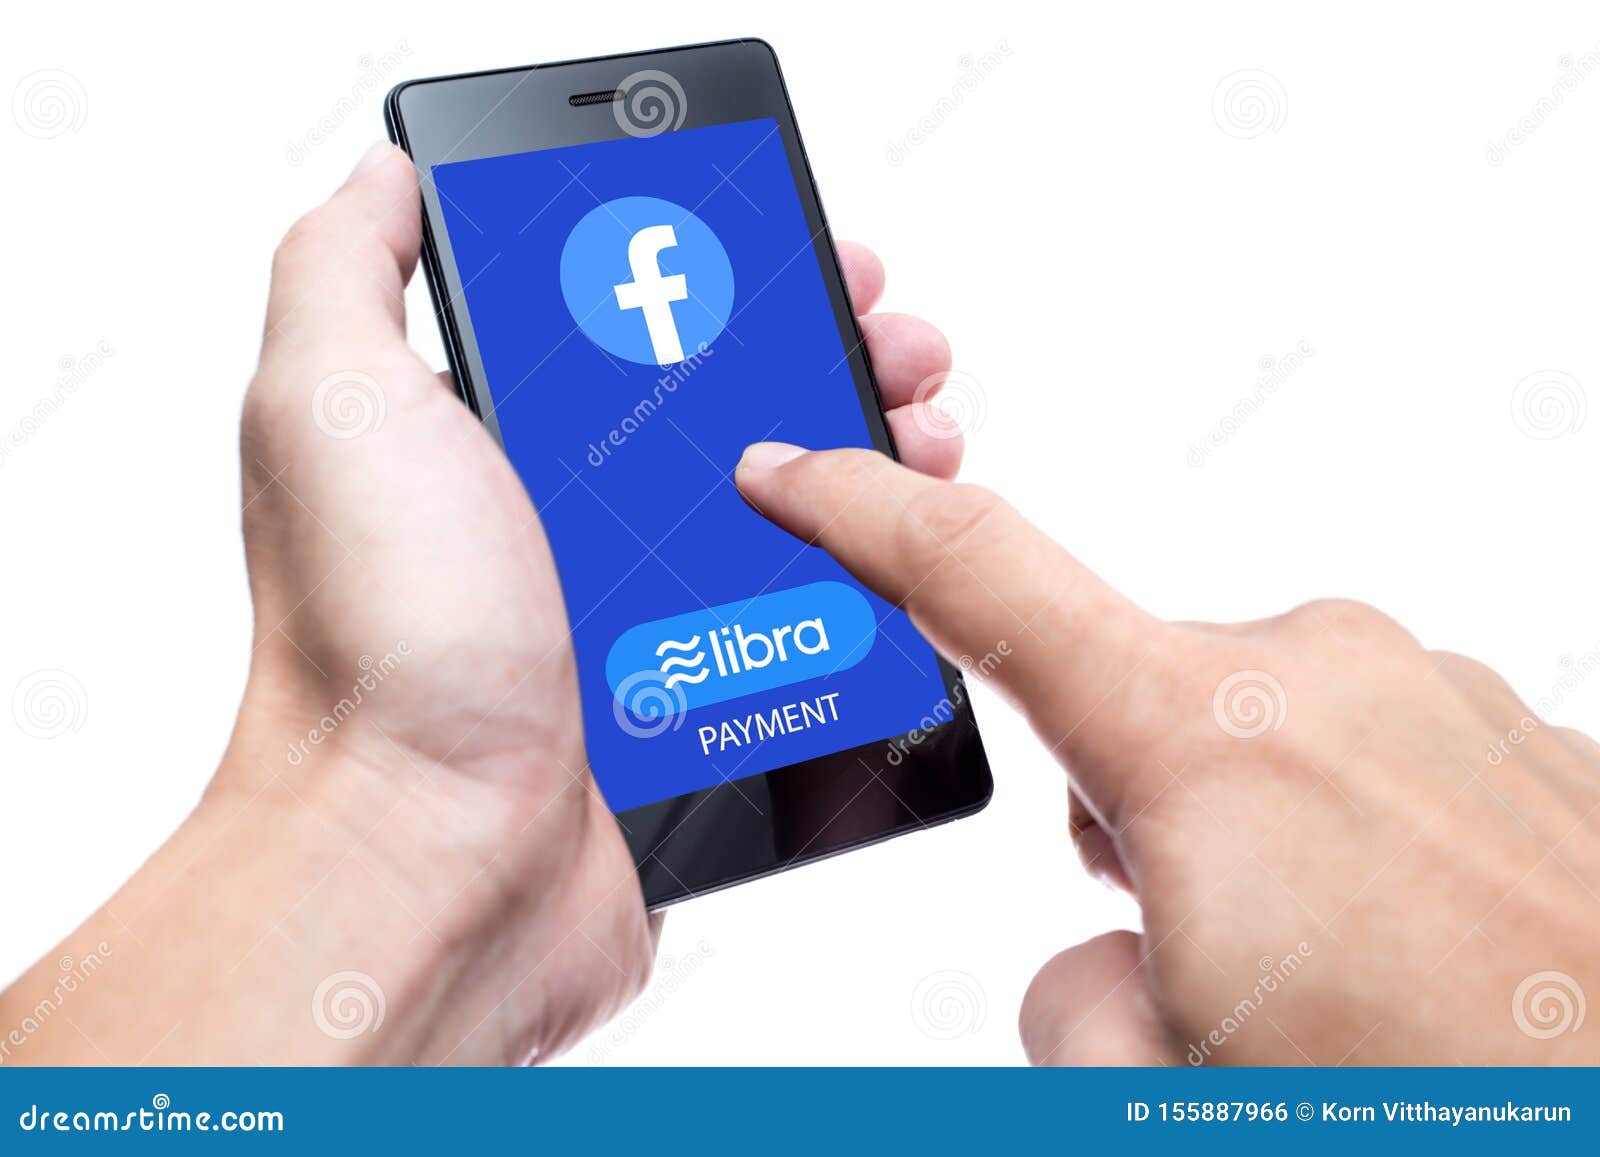 Facebook Libra Coin Logo Icon On Smartphone Screen On ...